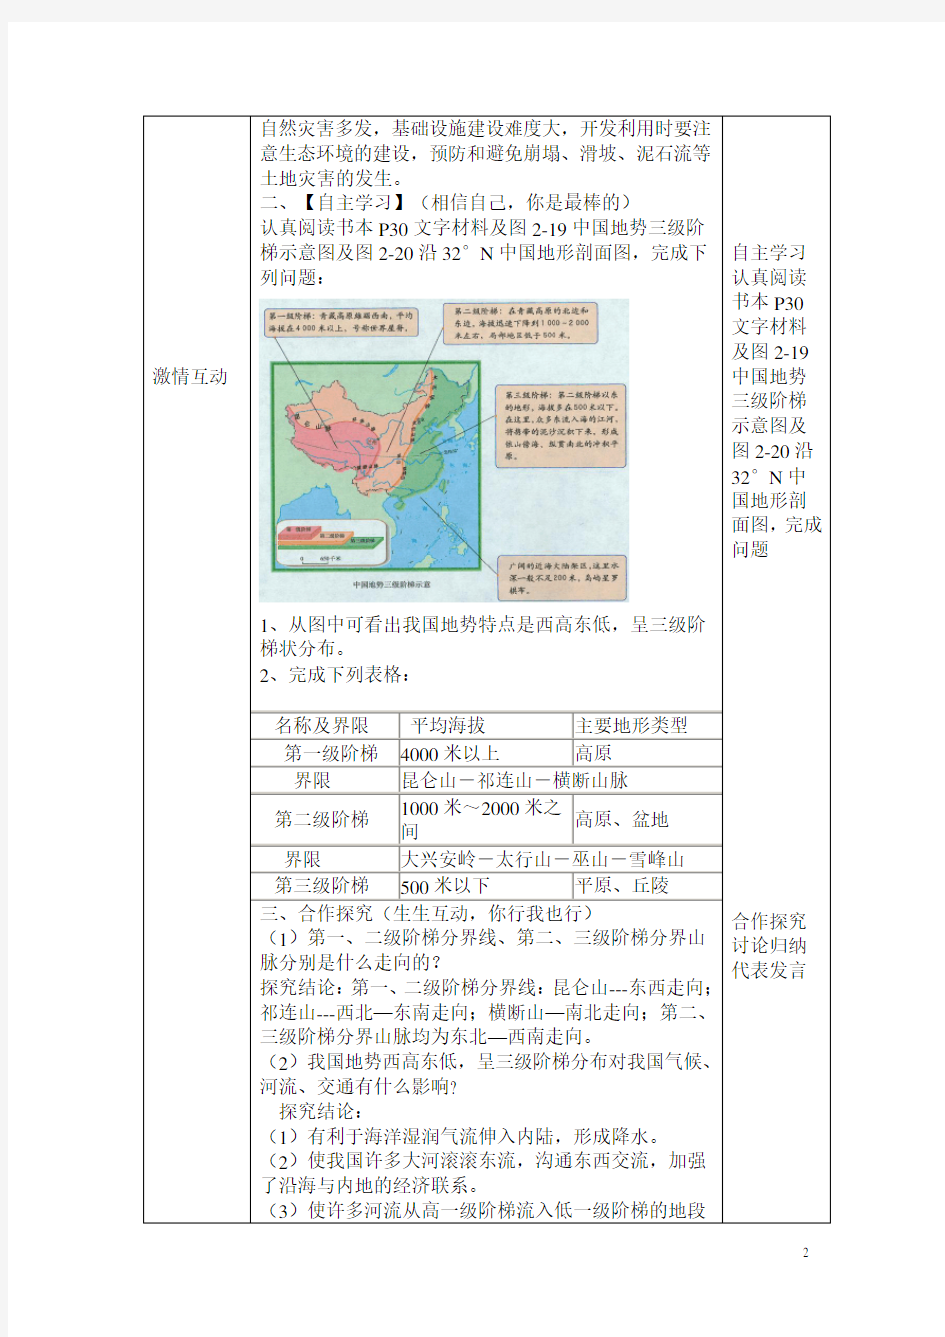 初中地理_中国的地形教学设计学情分析教材分析课后反思